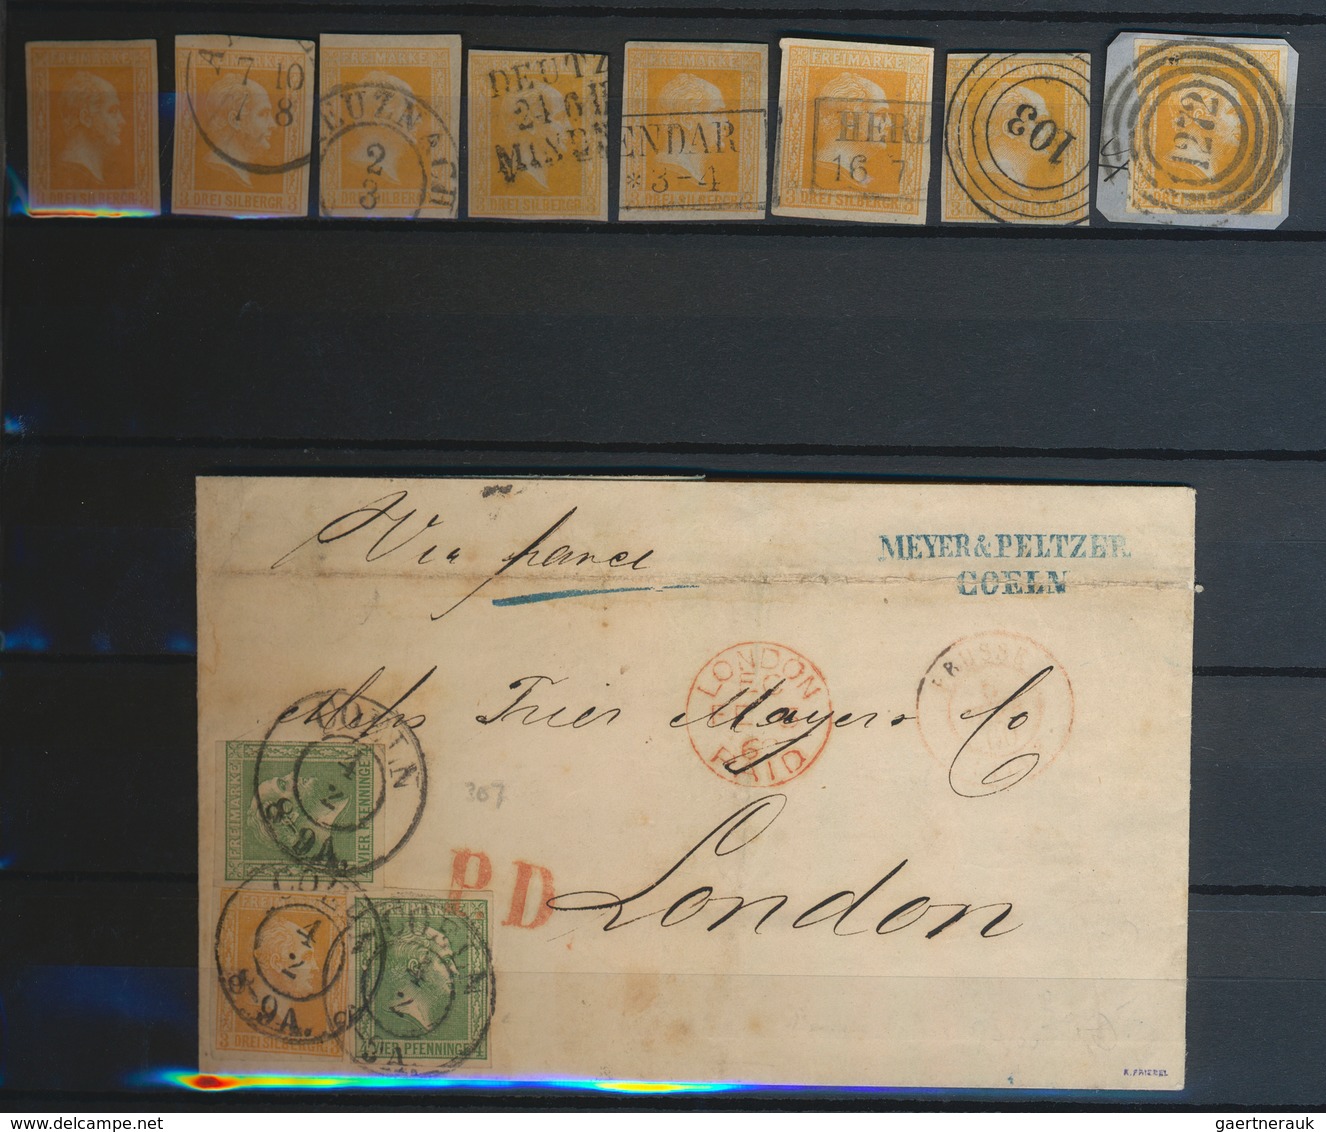 Preußen - Marken und Briefe: 1850/1867, meist gestempelte Sammlung von ca. 420 Werten (incl. Probe-